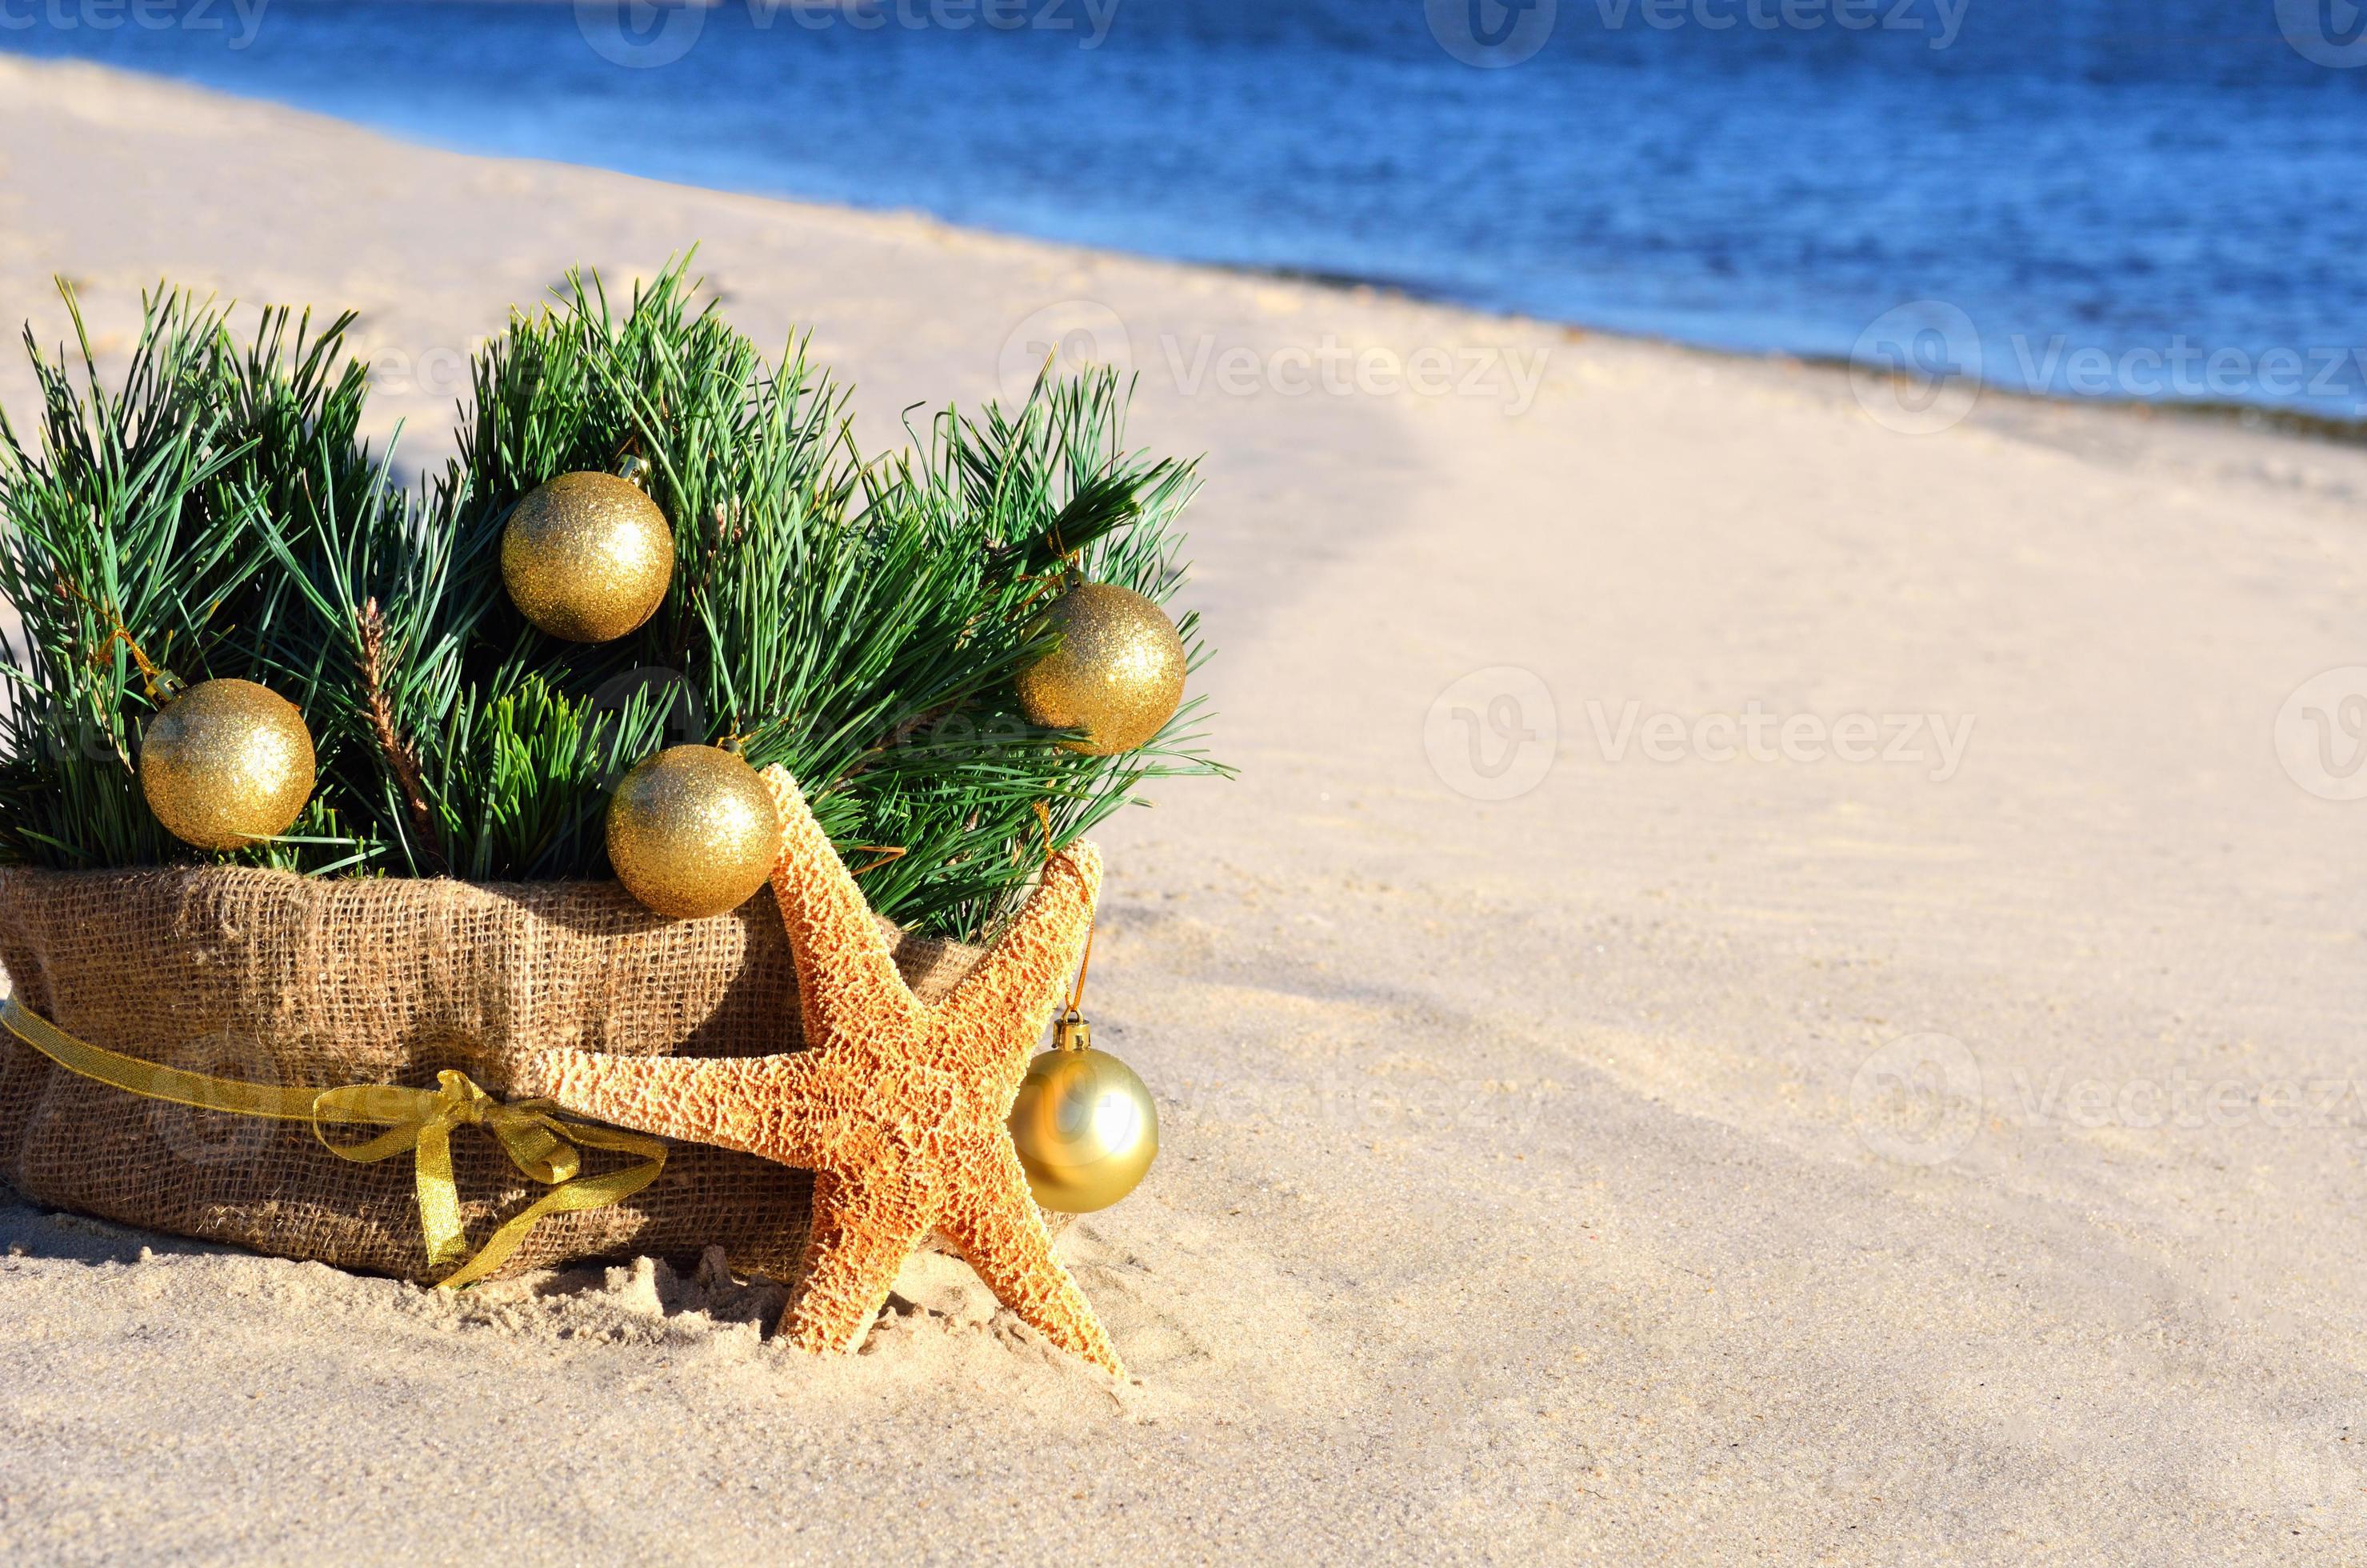 arbre de Noël avec des boules de Noël dorées, étoiles de mer sur le sable, plage photo